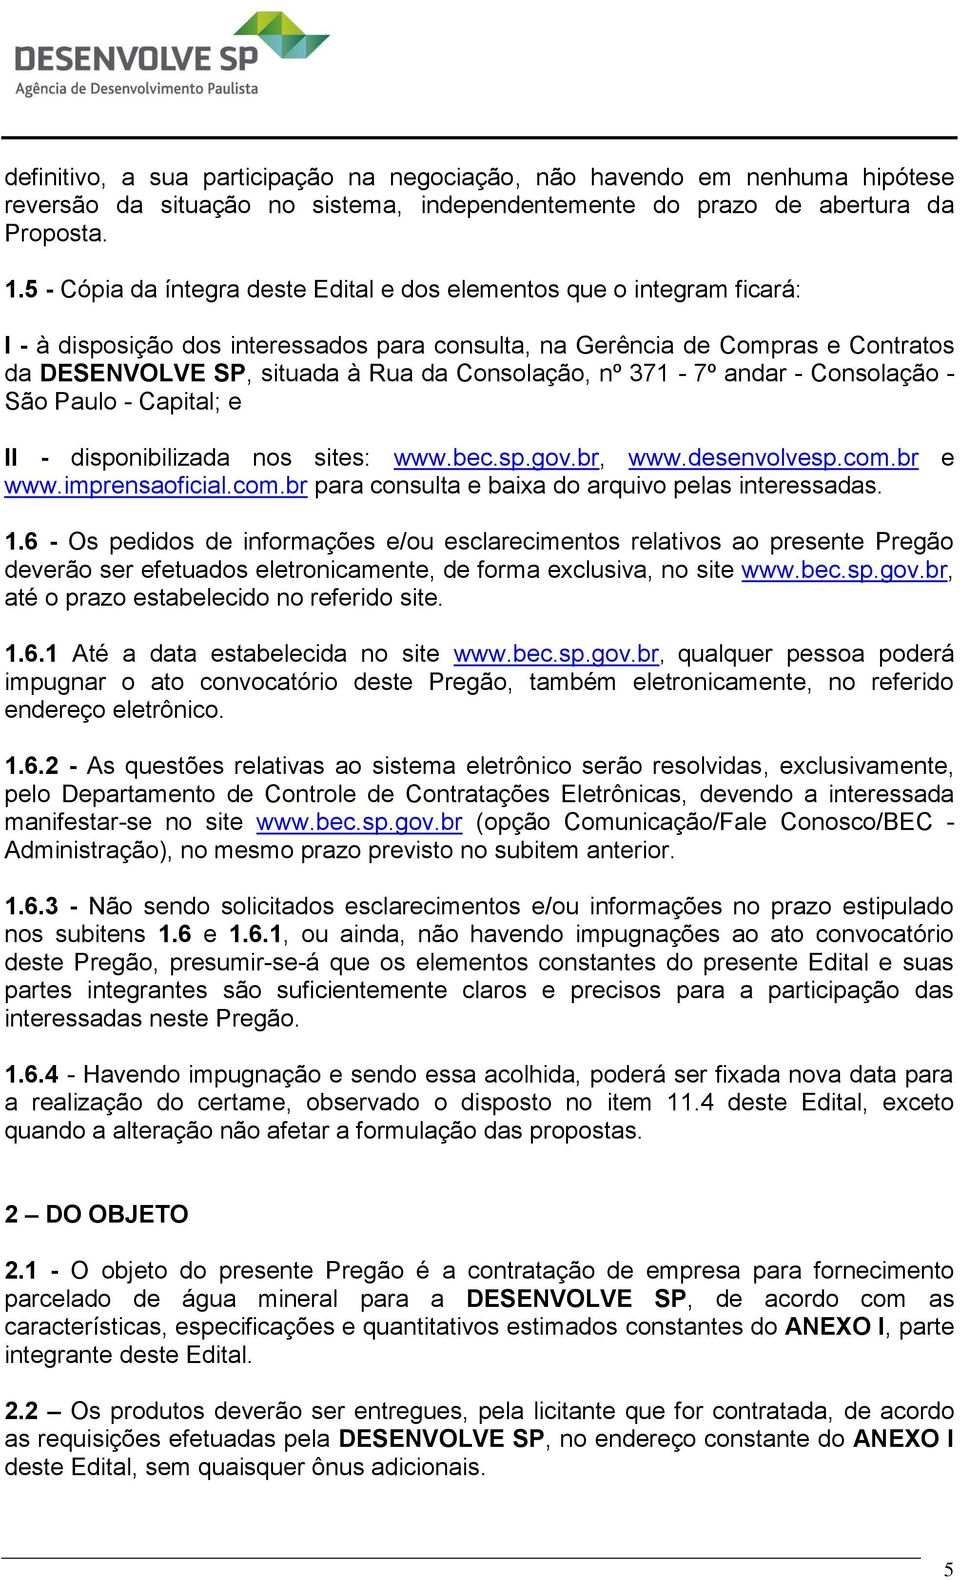 Consolação, nº 371-7º andar - Consolação - São Paulo - Capital; e II - disponibilizada nos sites: www.bec.sp.gov.br, www.desenvolvesp.com.br e www.imprensaoficial.com.br para consulta e baixa do arquivo pelas interessadas.